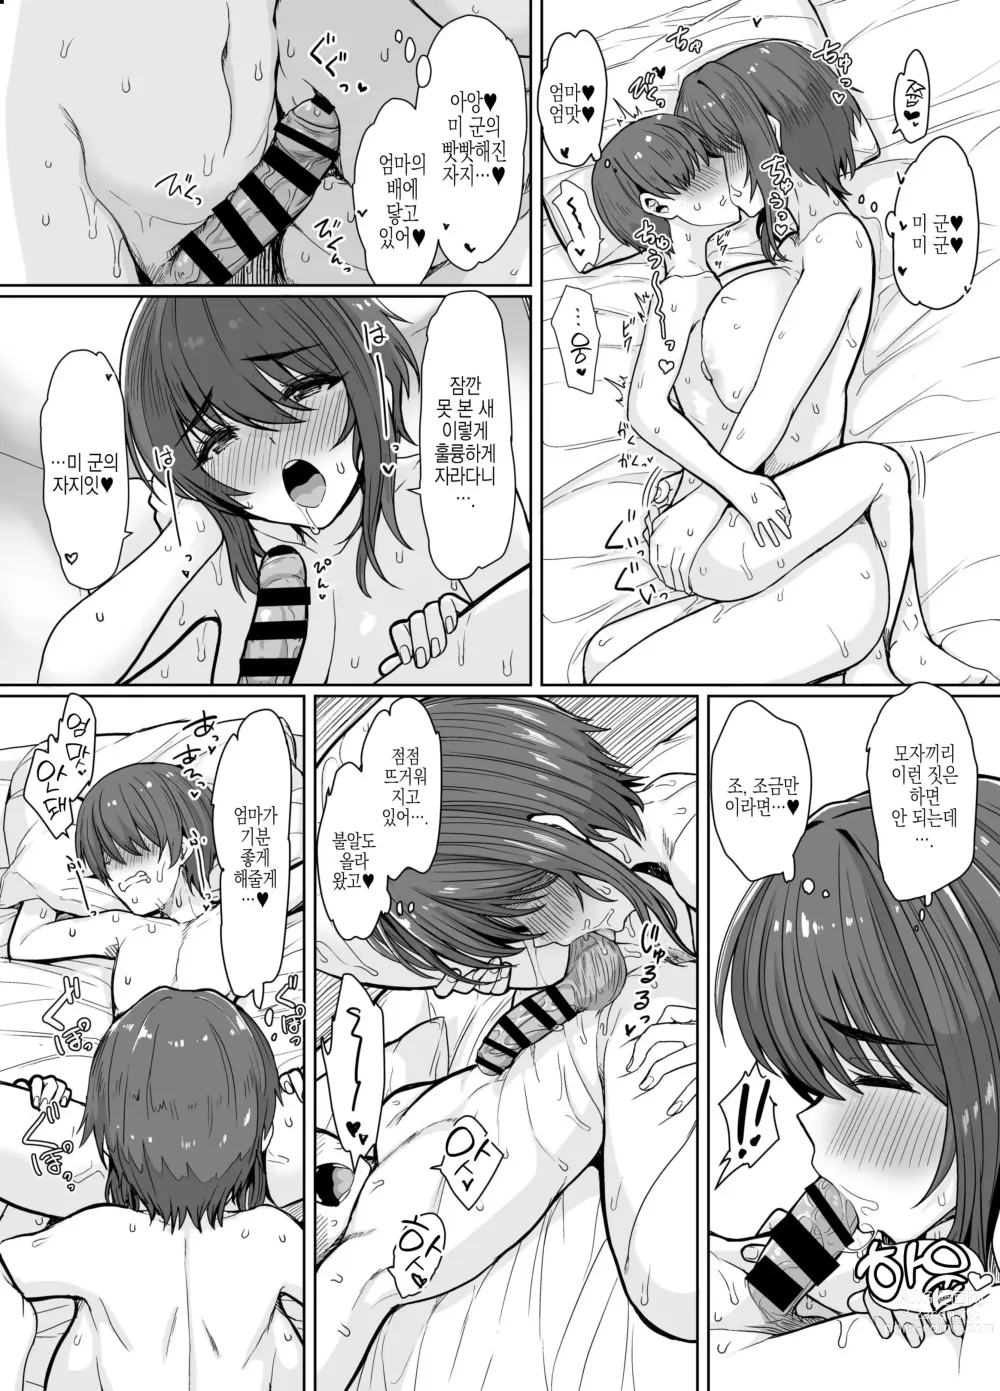 Page 5 of doujinshi 반하는 약으로 암컷이 된 귀여운 거유 엄마에게 덮쳐지고 싶다